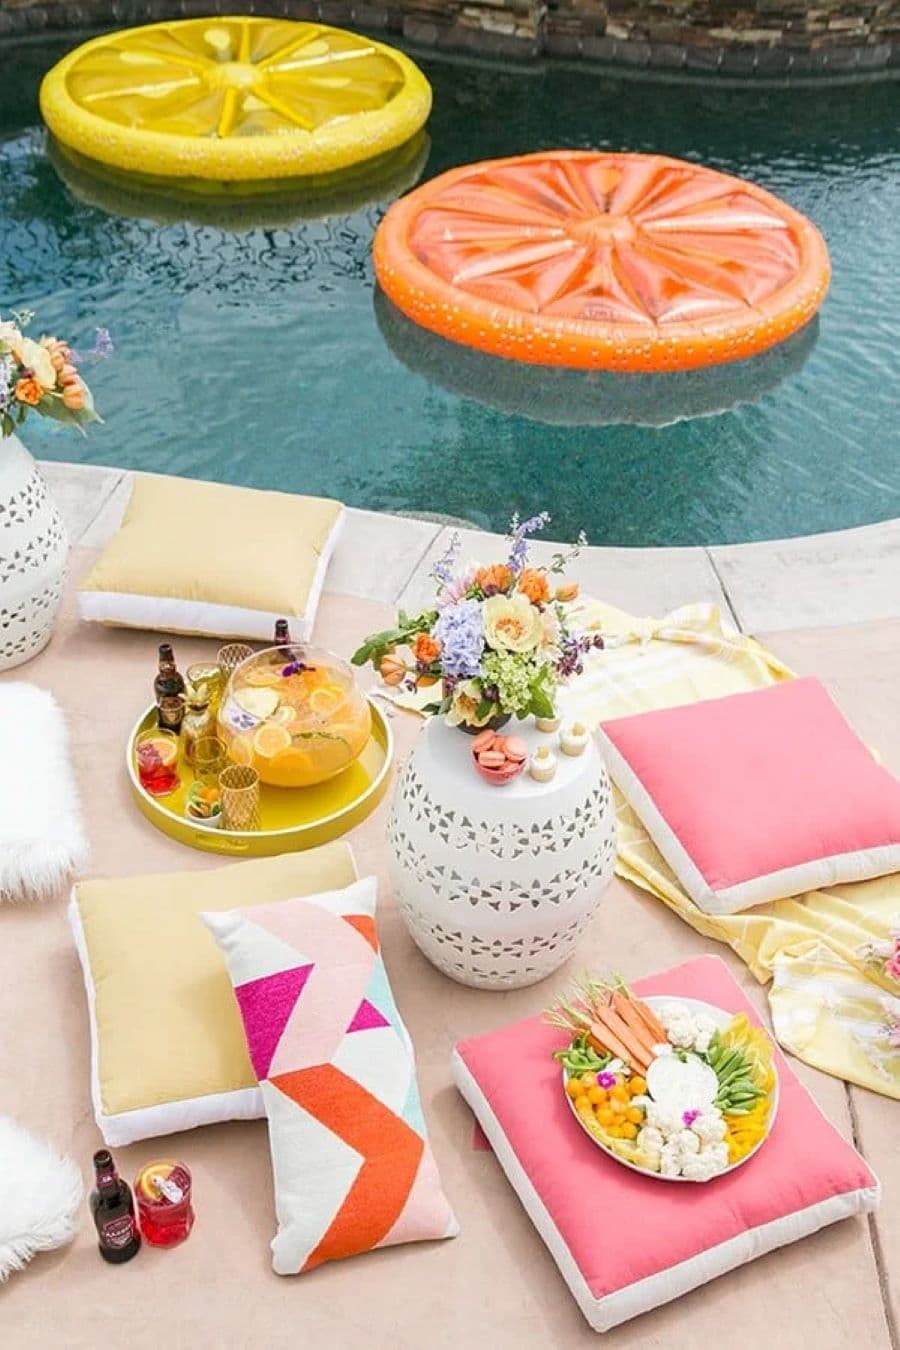 Imagen cenital del borde de una piscina, se ve el agua y una zona de descanso. Hay 4 cojines cuadrados de color amarillo y rosado, y un cojín alargado con diseño geométrico. Mesa de centro blanca con ramo de flores. Bandeja amarilla y flotador de naranja.